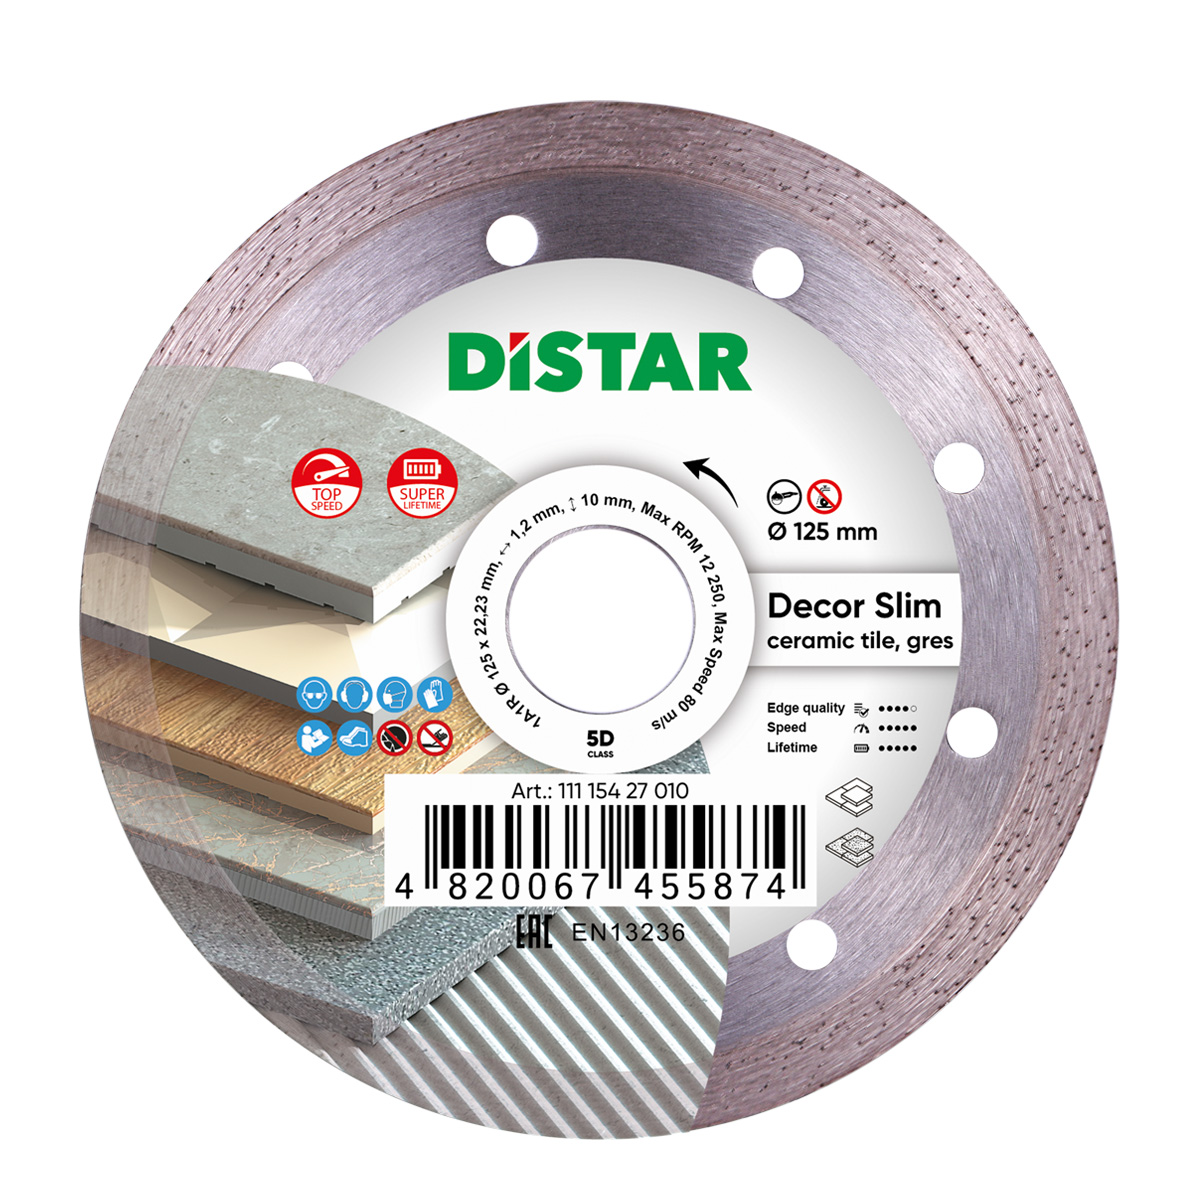 Диск алмазный отрезной по керамике и керамограниту для УШМ Distar 125 мм Decor Slim 5D диск алмазный отрезной по керамике и керамограниту для ушм distar 1a1r 125 мм esthete 7d